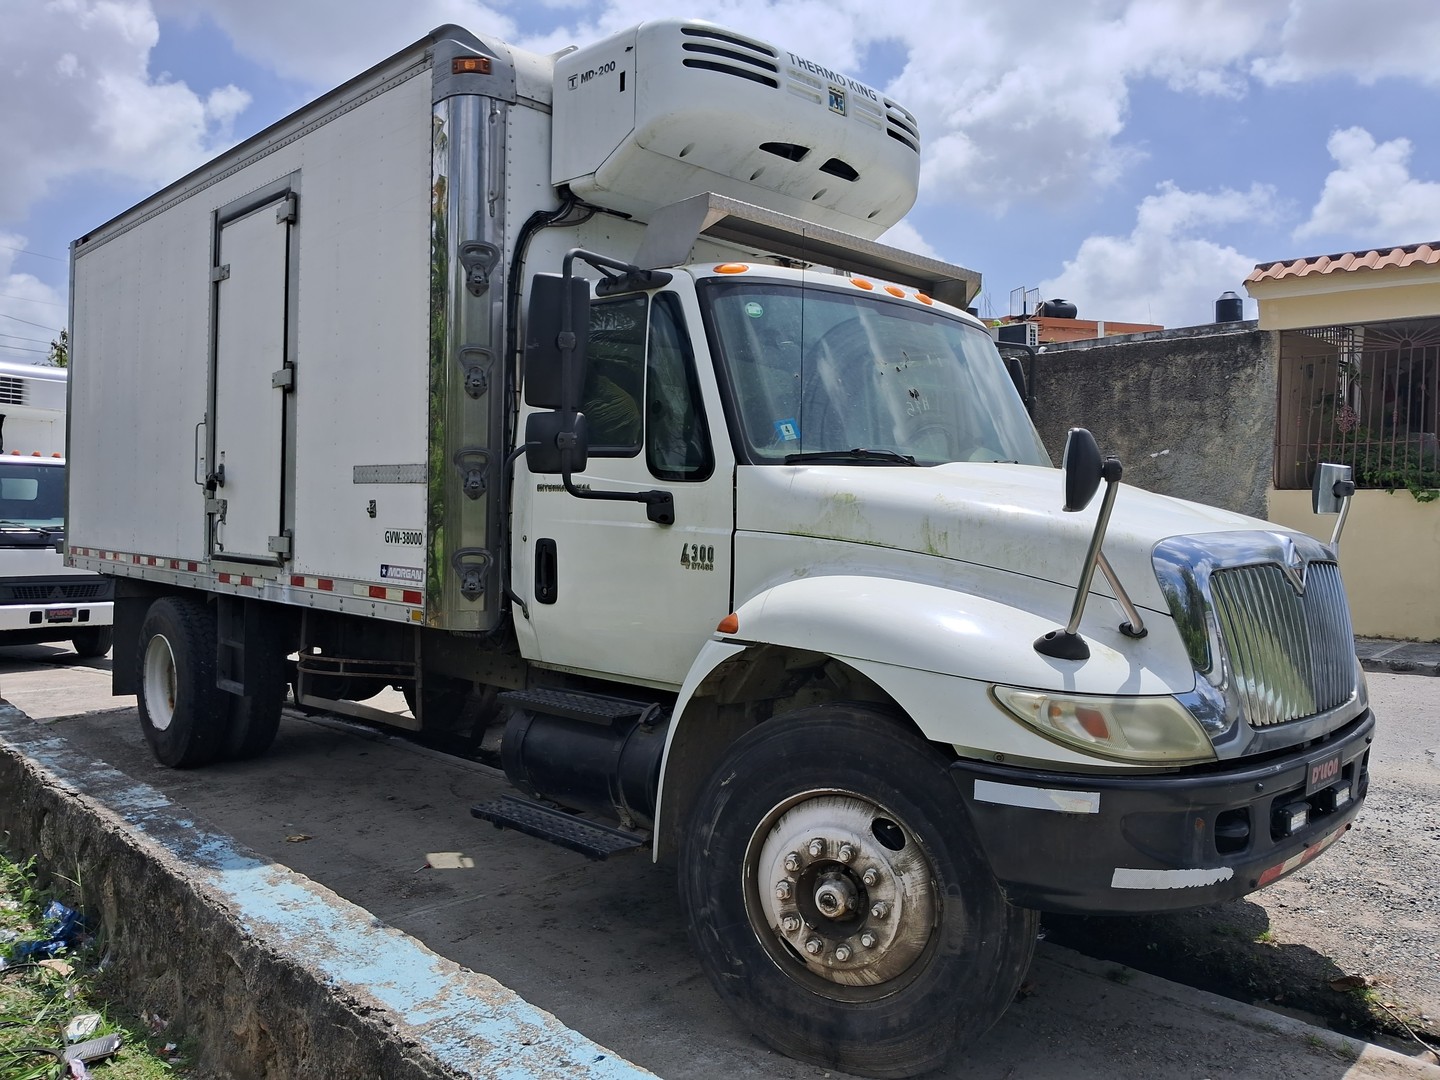 camiones y vehiculos pesados - Camión Internacional Modelo 4300 DT466. año 2007  3